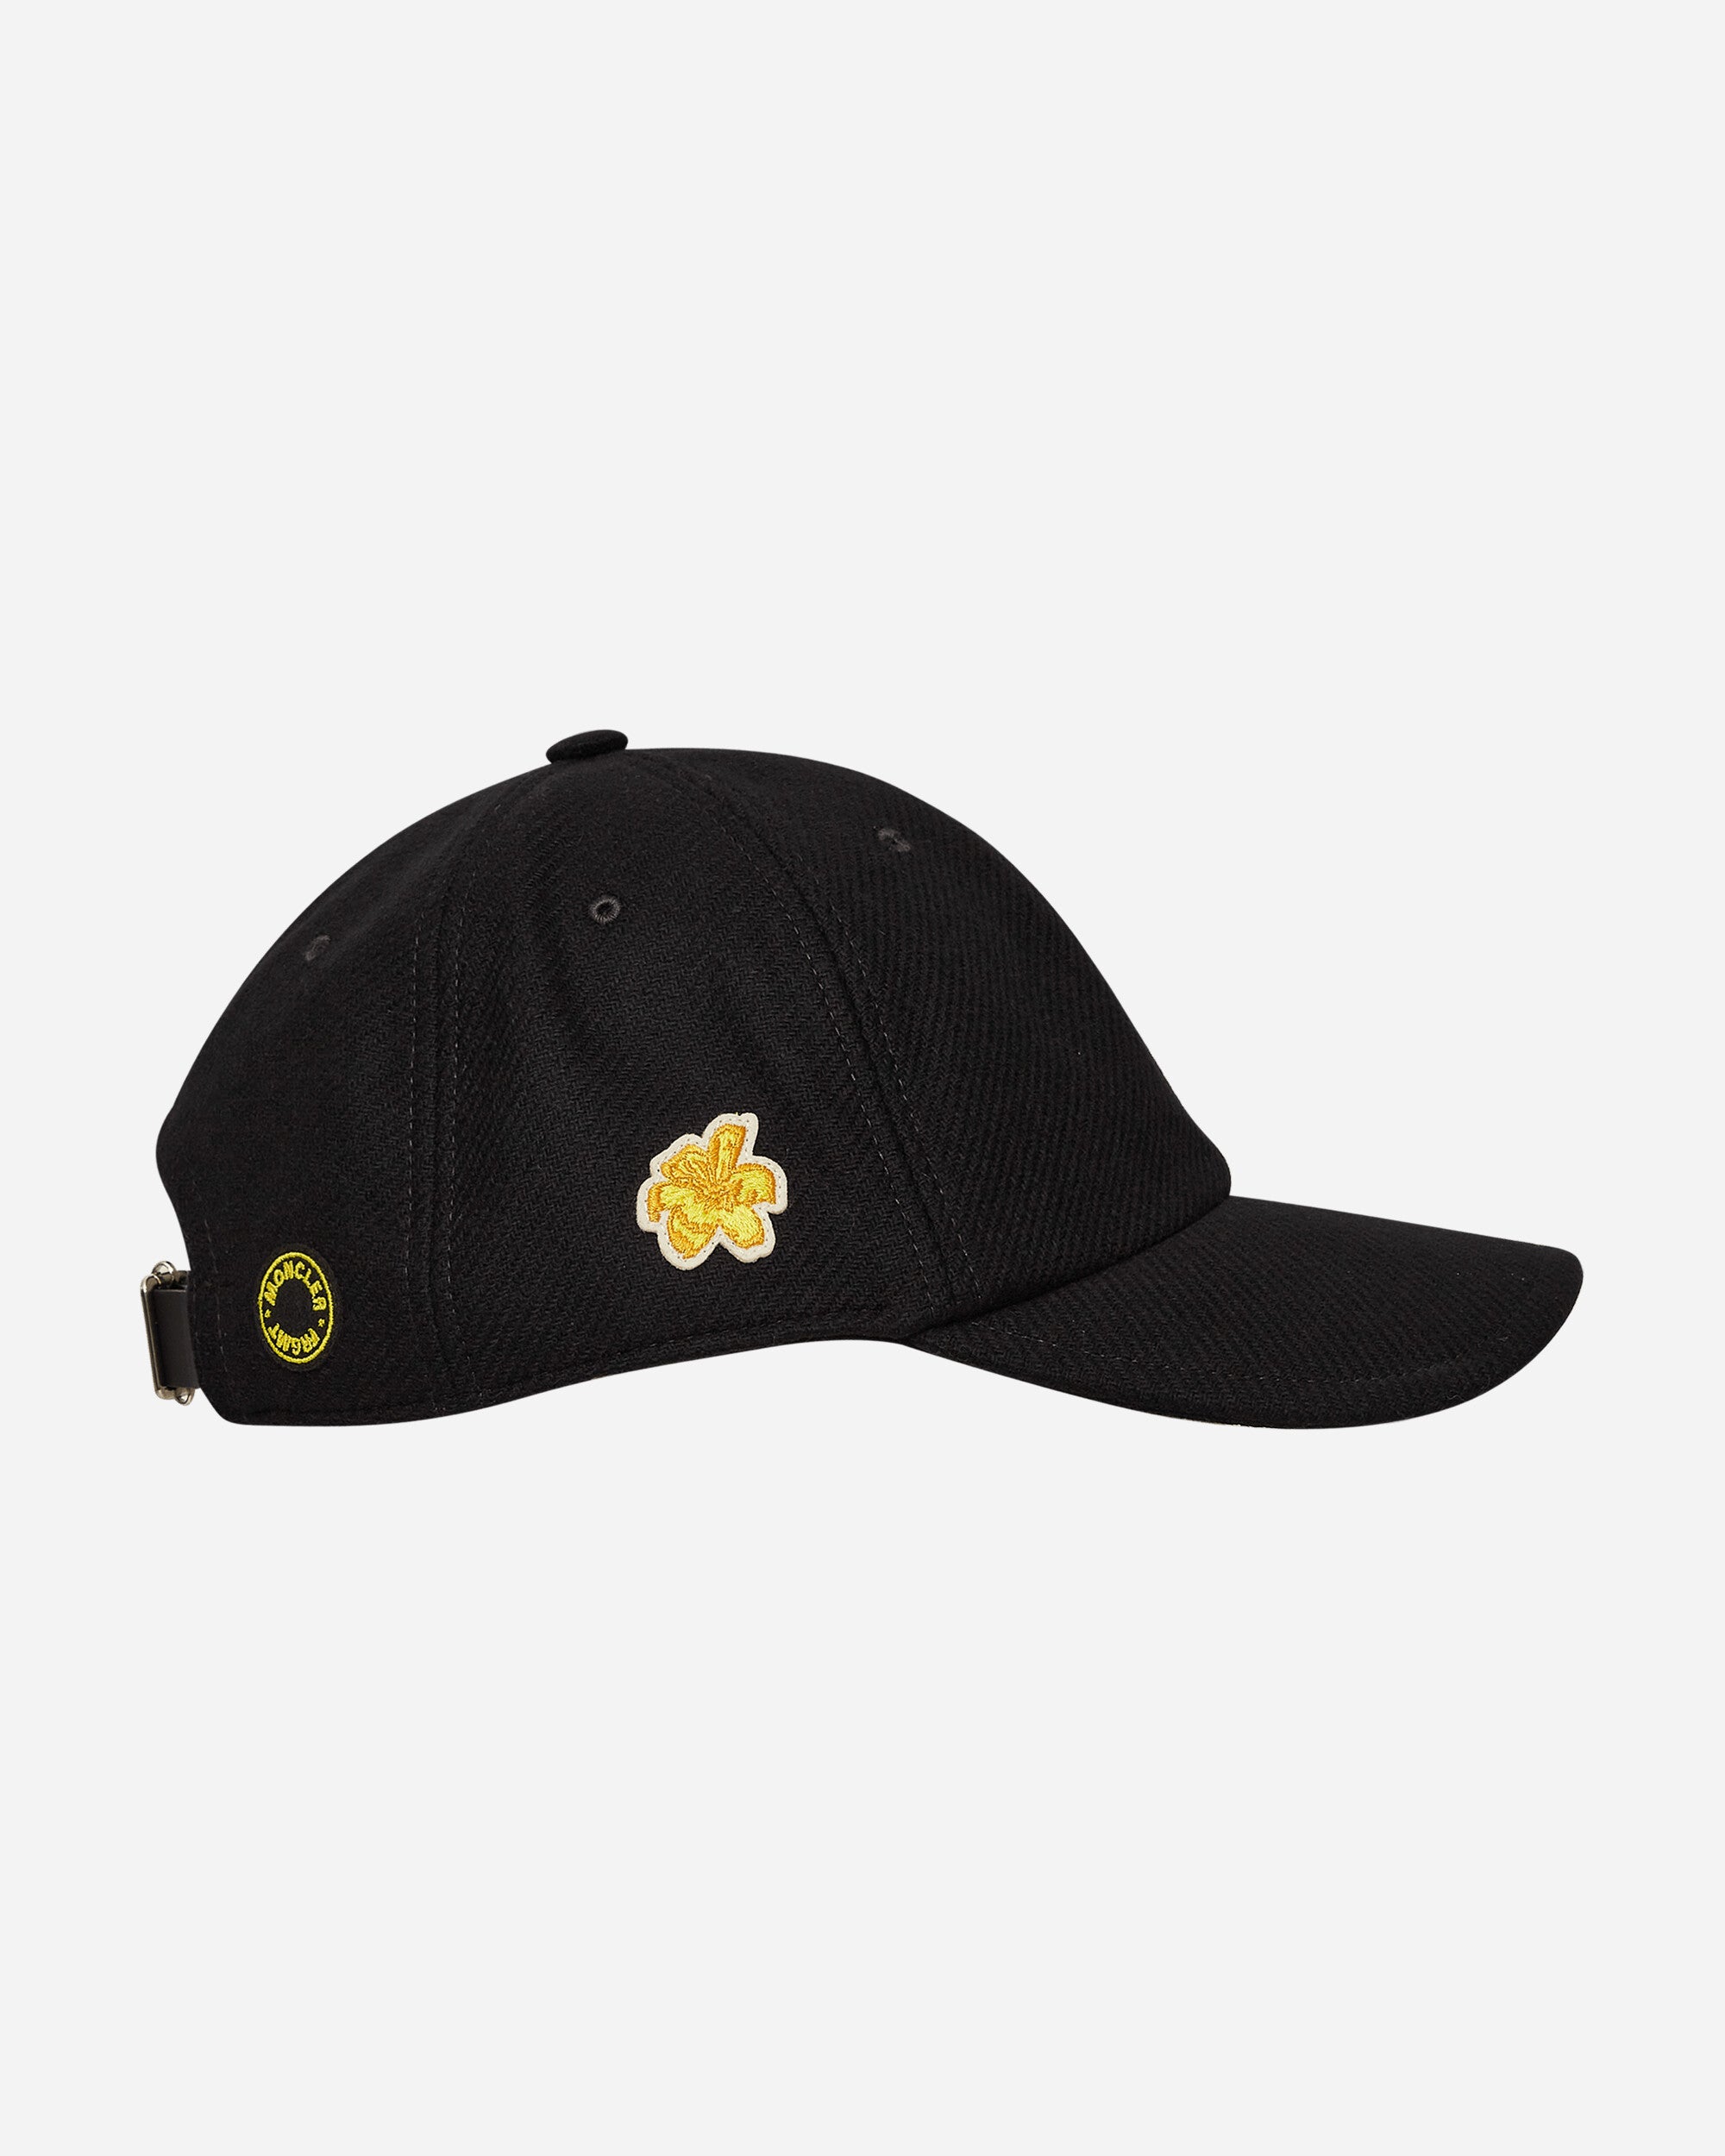 Moncler Genius Baseball Cap X Fragment Black Hats Caps 3B00005596UA 999